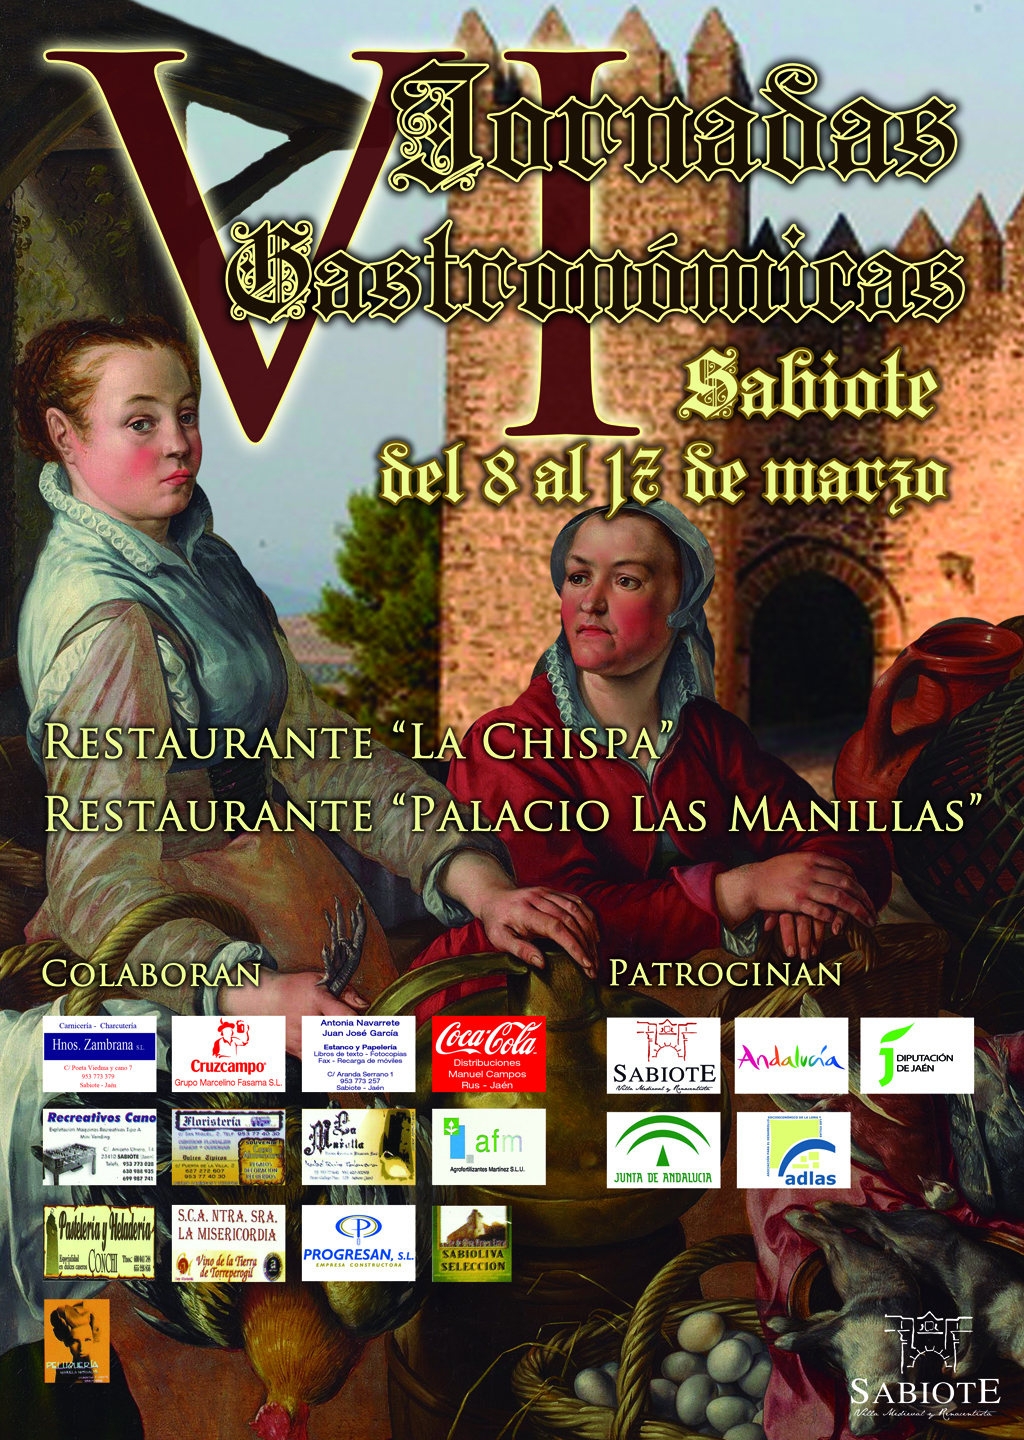 Cartel del Jornadas Gastronomicas en Sabiote 2013